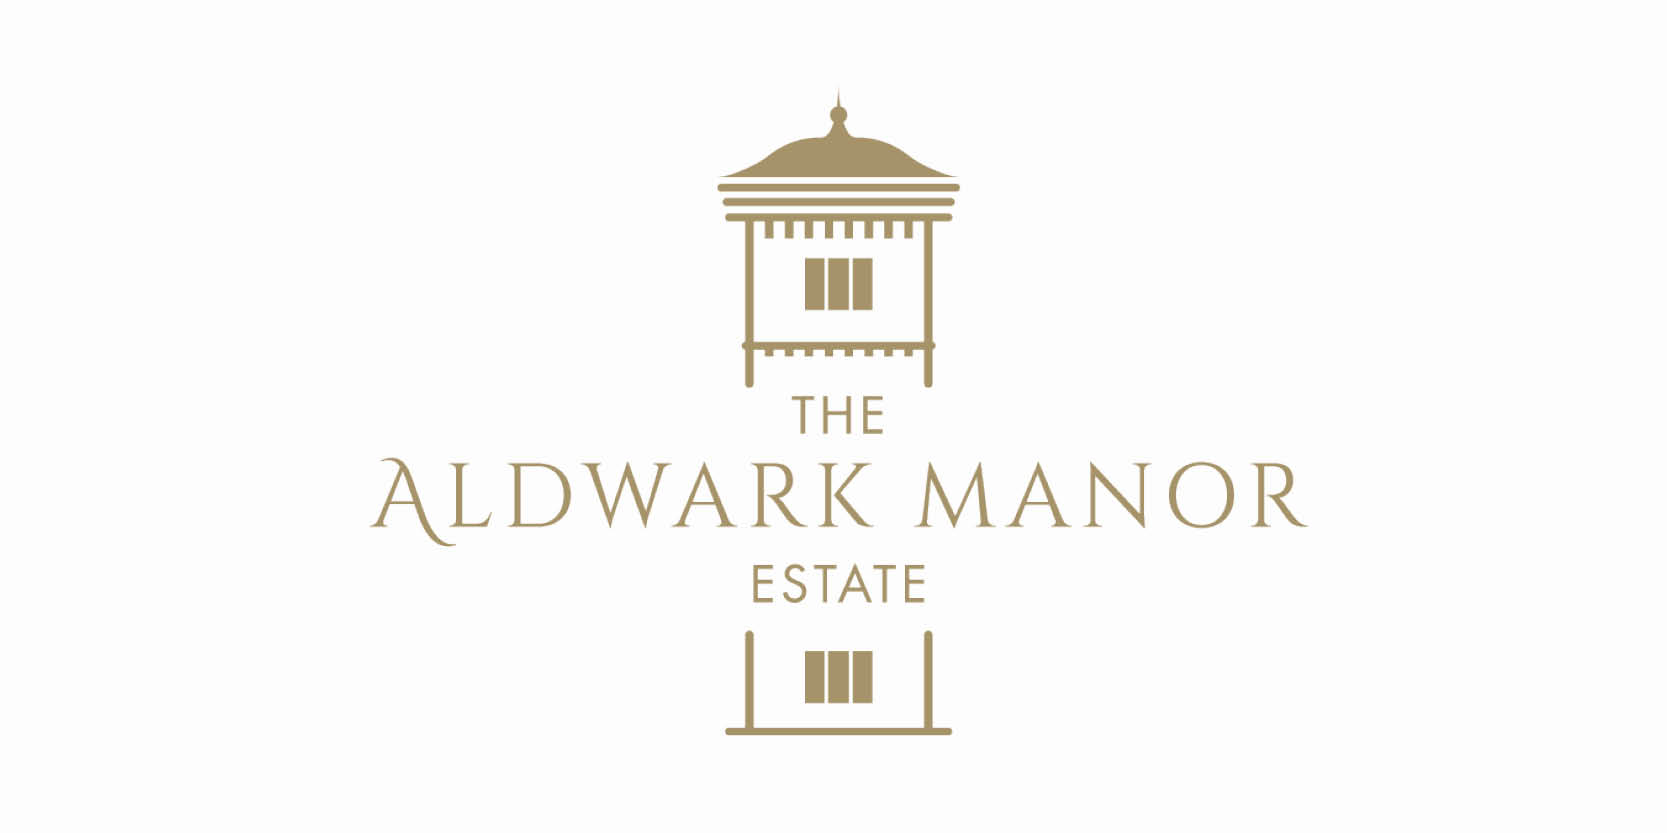 Aldwark Manor logo